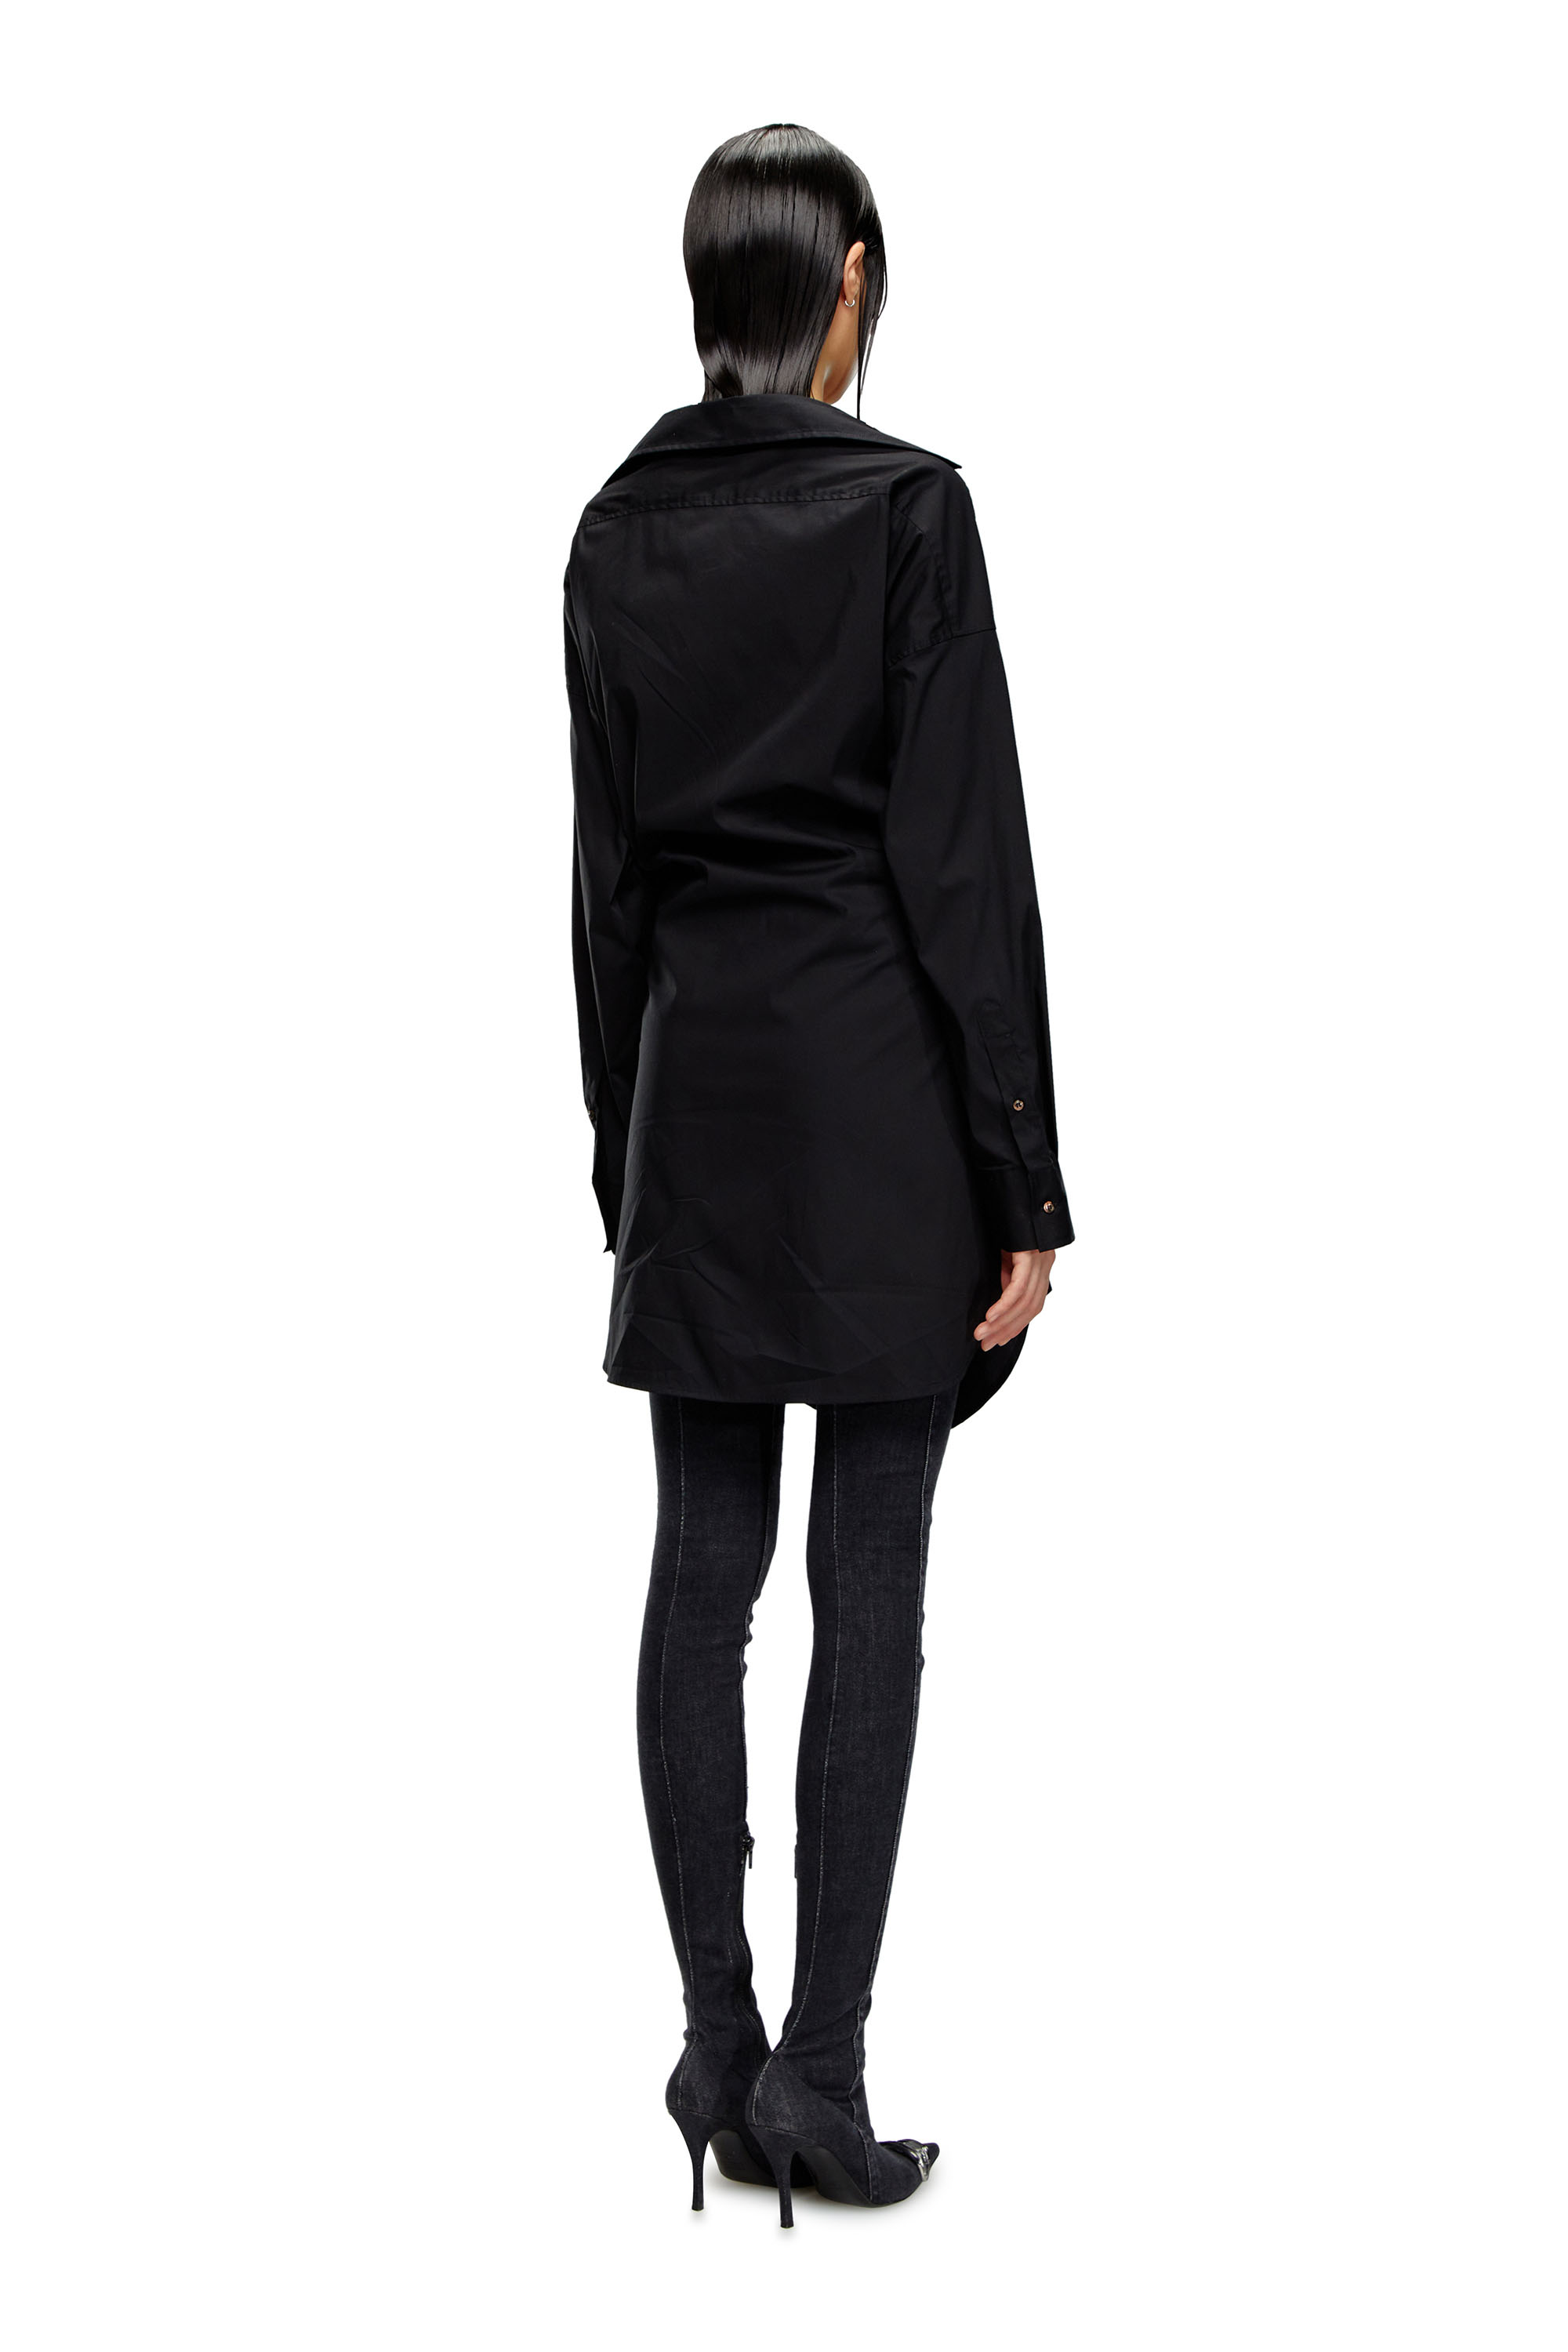 Diesel - D-SIZEN-N1, Woman Short shirt dress in stretch poplin in Black - Image 2